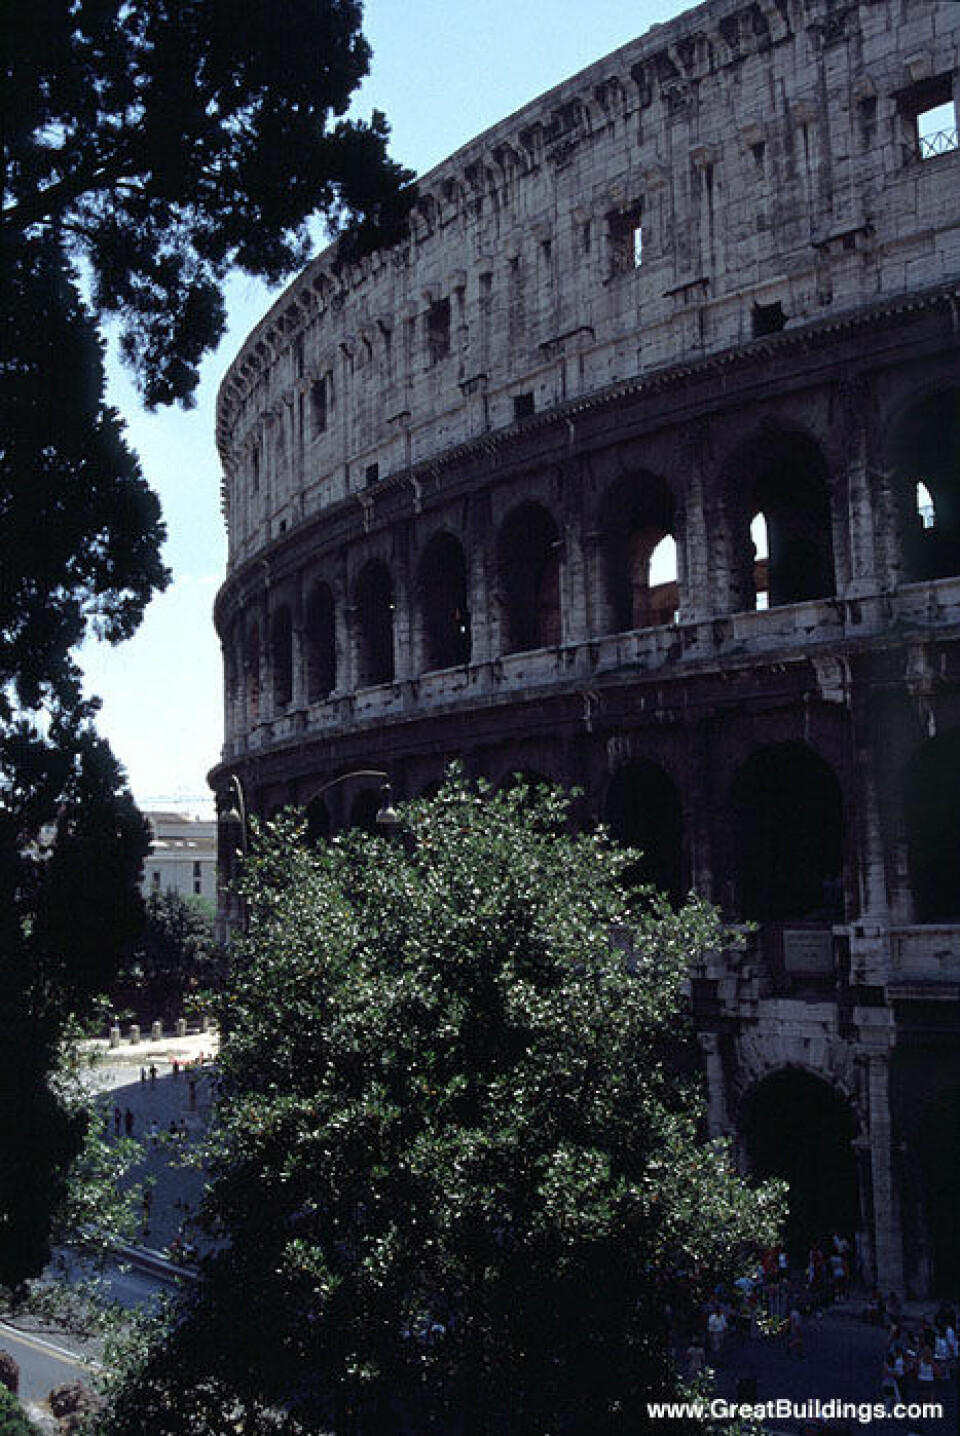 'Colosseum i Roma er den mest berømte av gladiatorenes arenaer.'